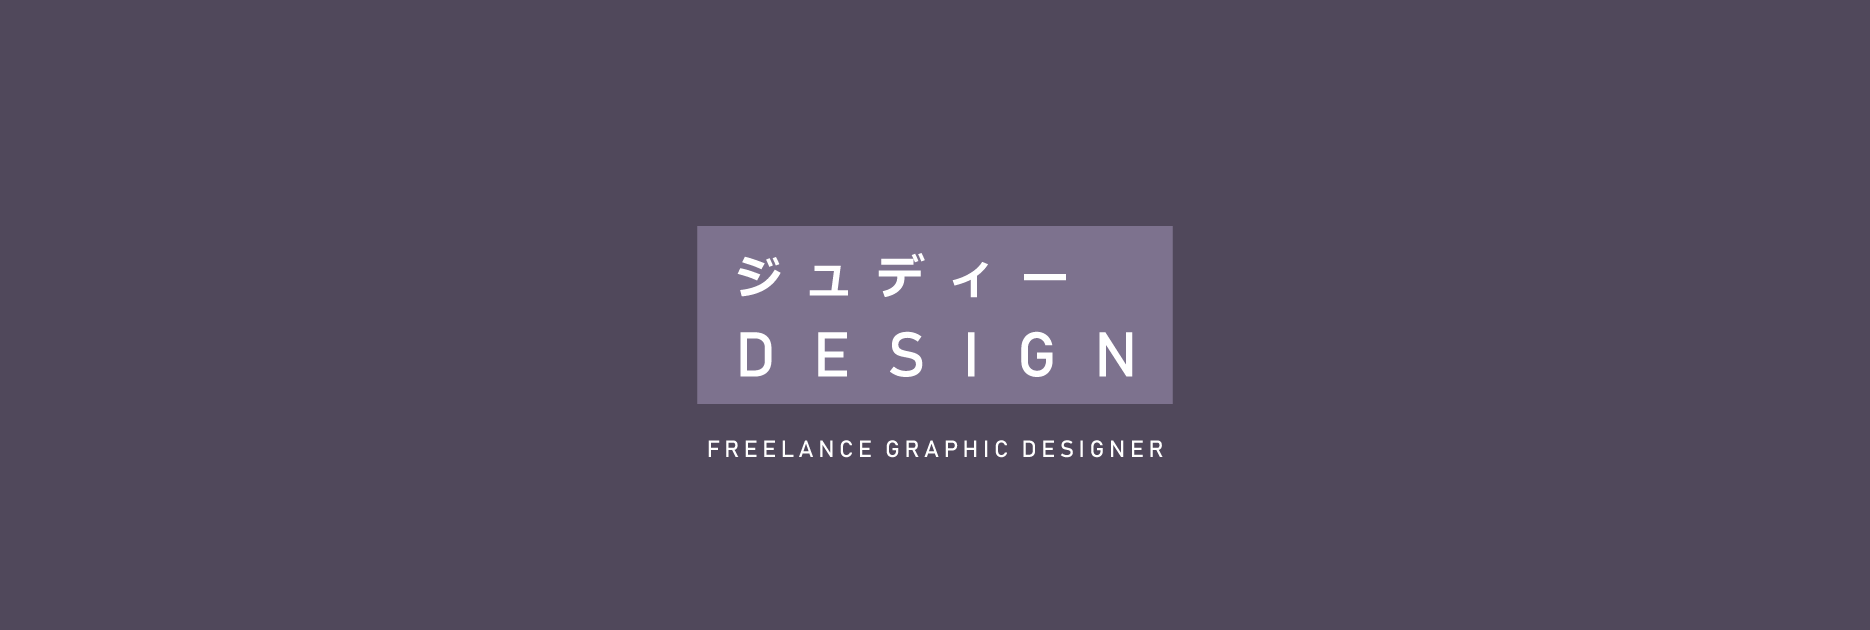 Logo Judi DESIGN graphiste freelance